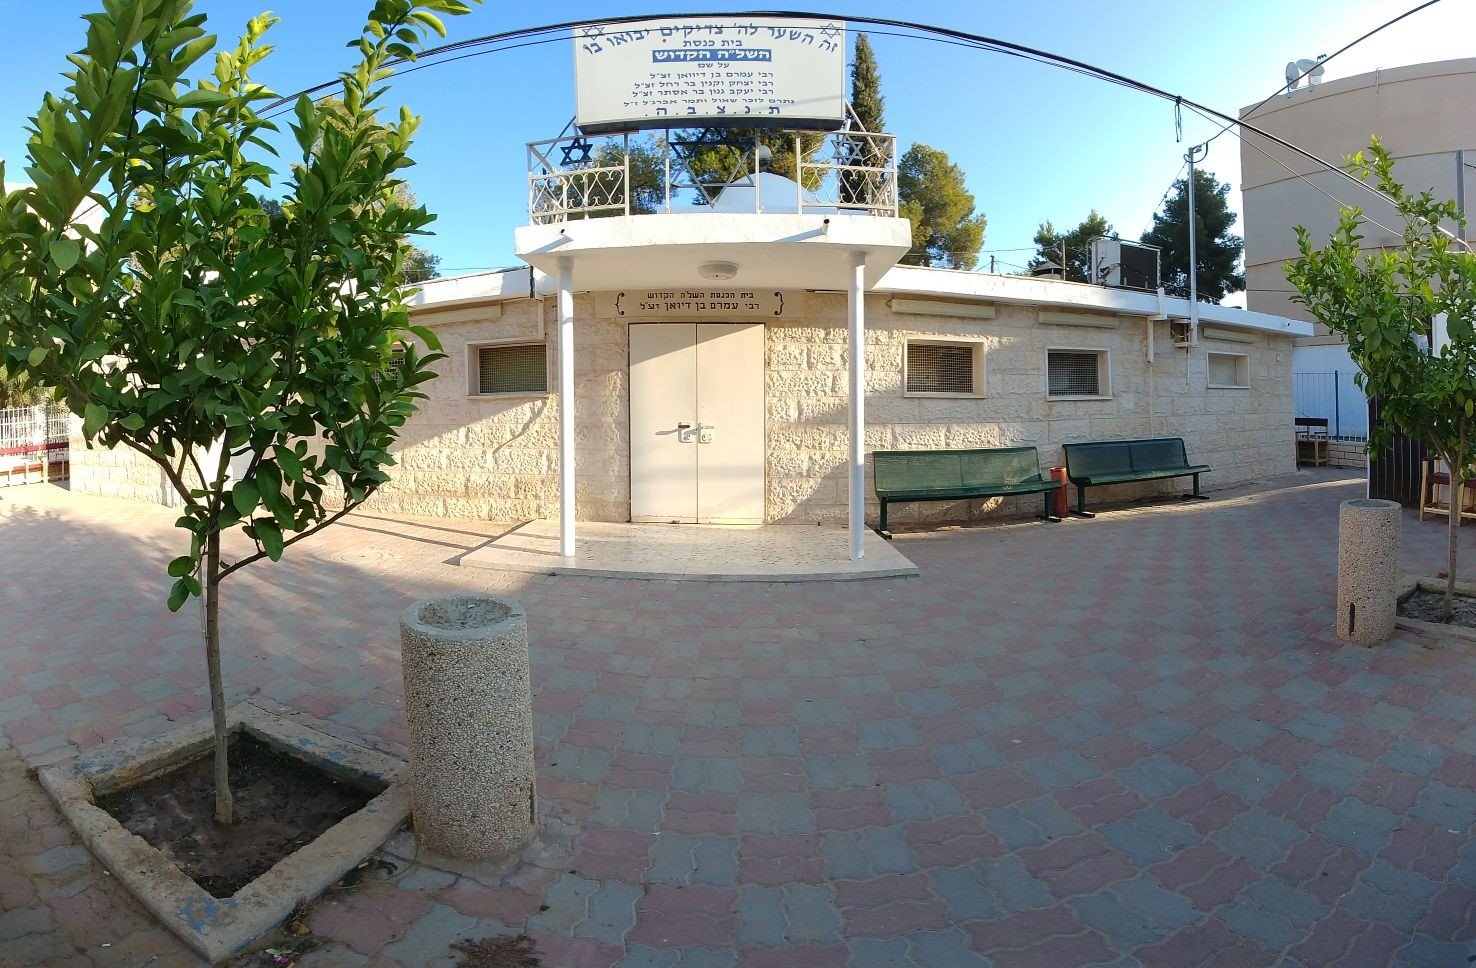 בית הכנסת ע"ש רבי עמרם בן דיוואן זצ"ל. (צילום: נועה גבאי). 